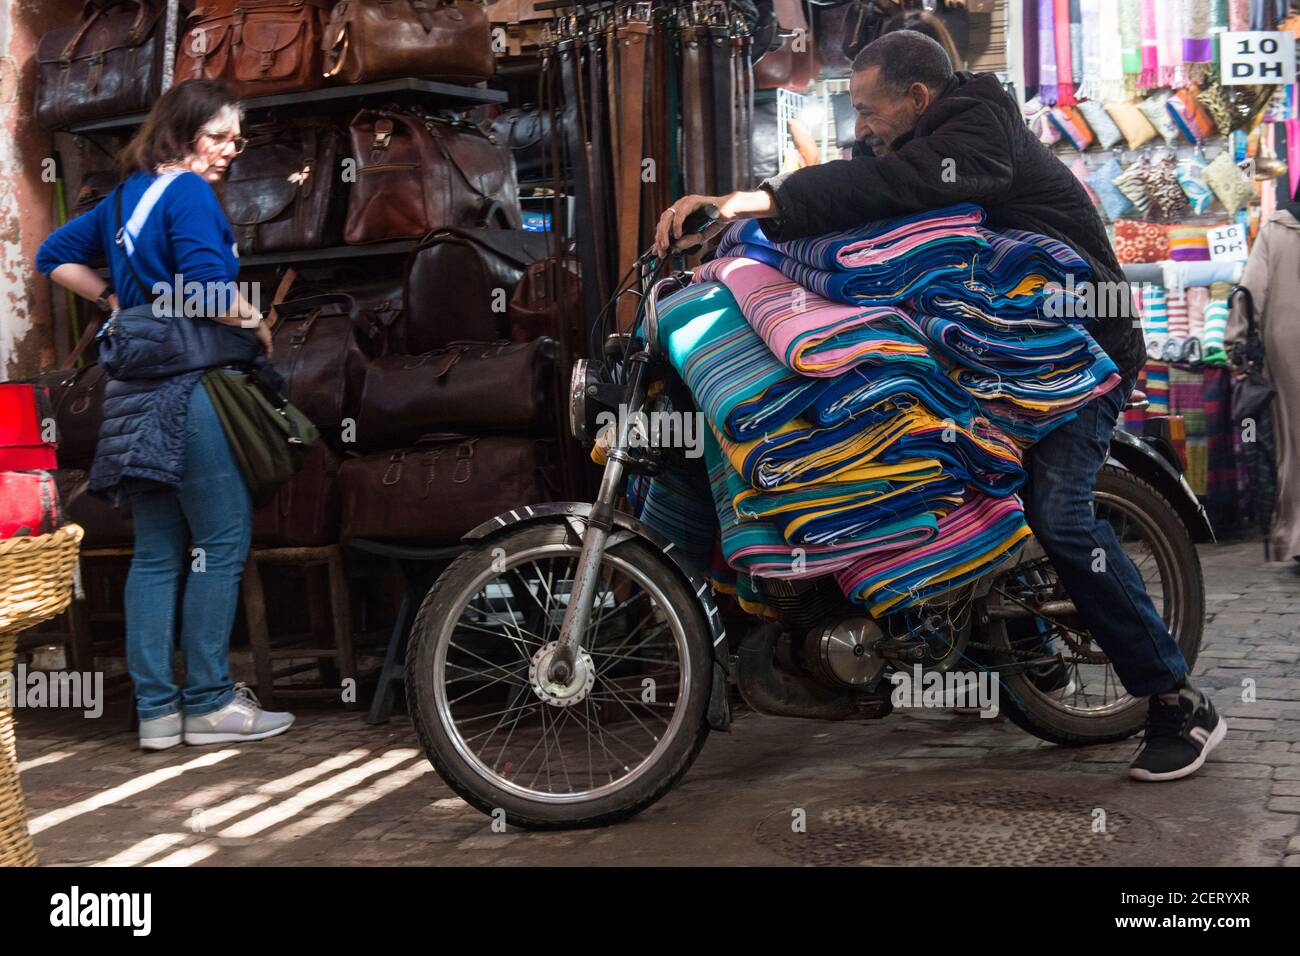 Ne dites pas la santé et la sécurité! Le touriste observe un homme qui fait de son moto, surchargé de rouleaux de tissu, à travers le souk de Marrakech Banque D'Images